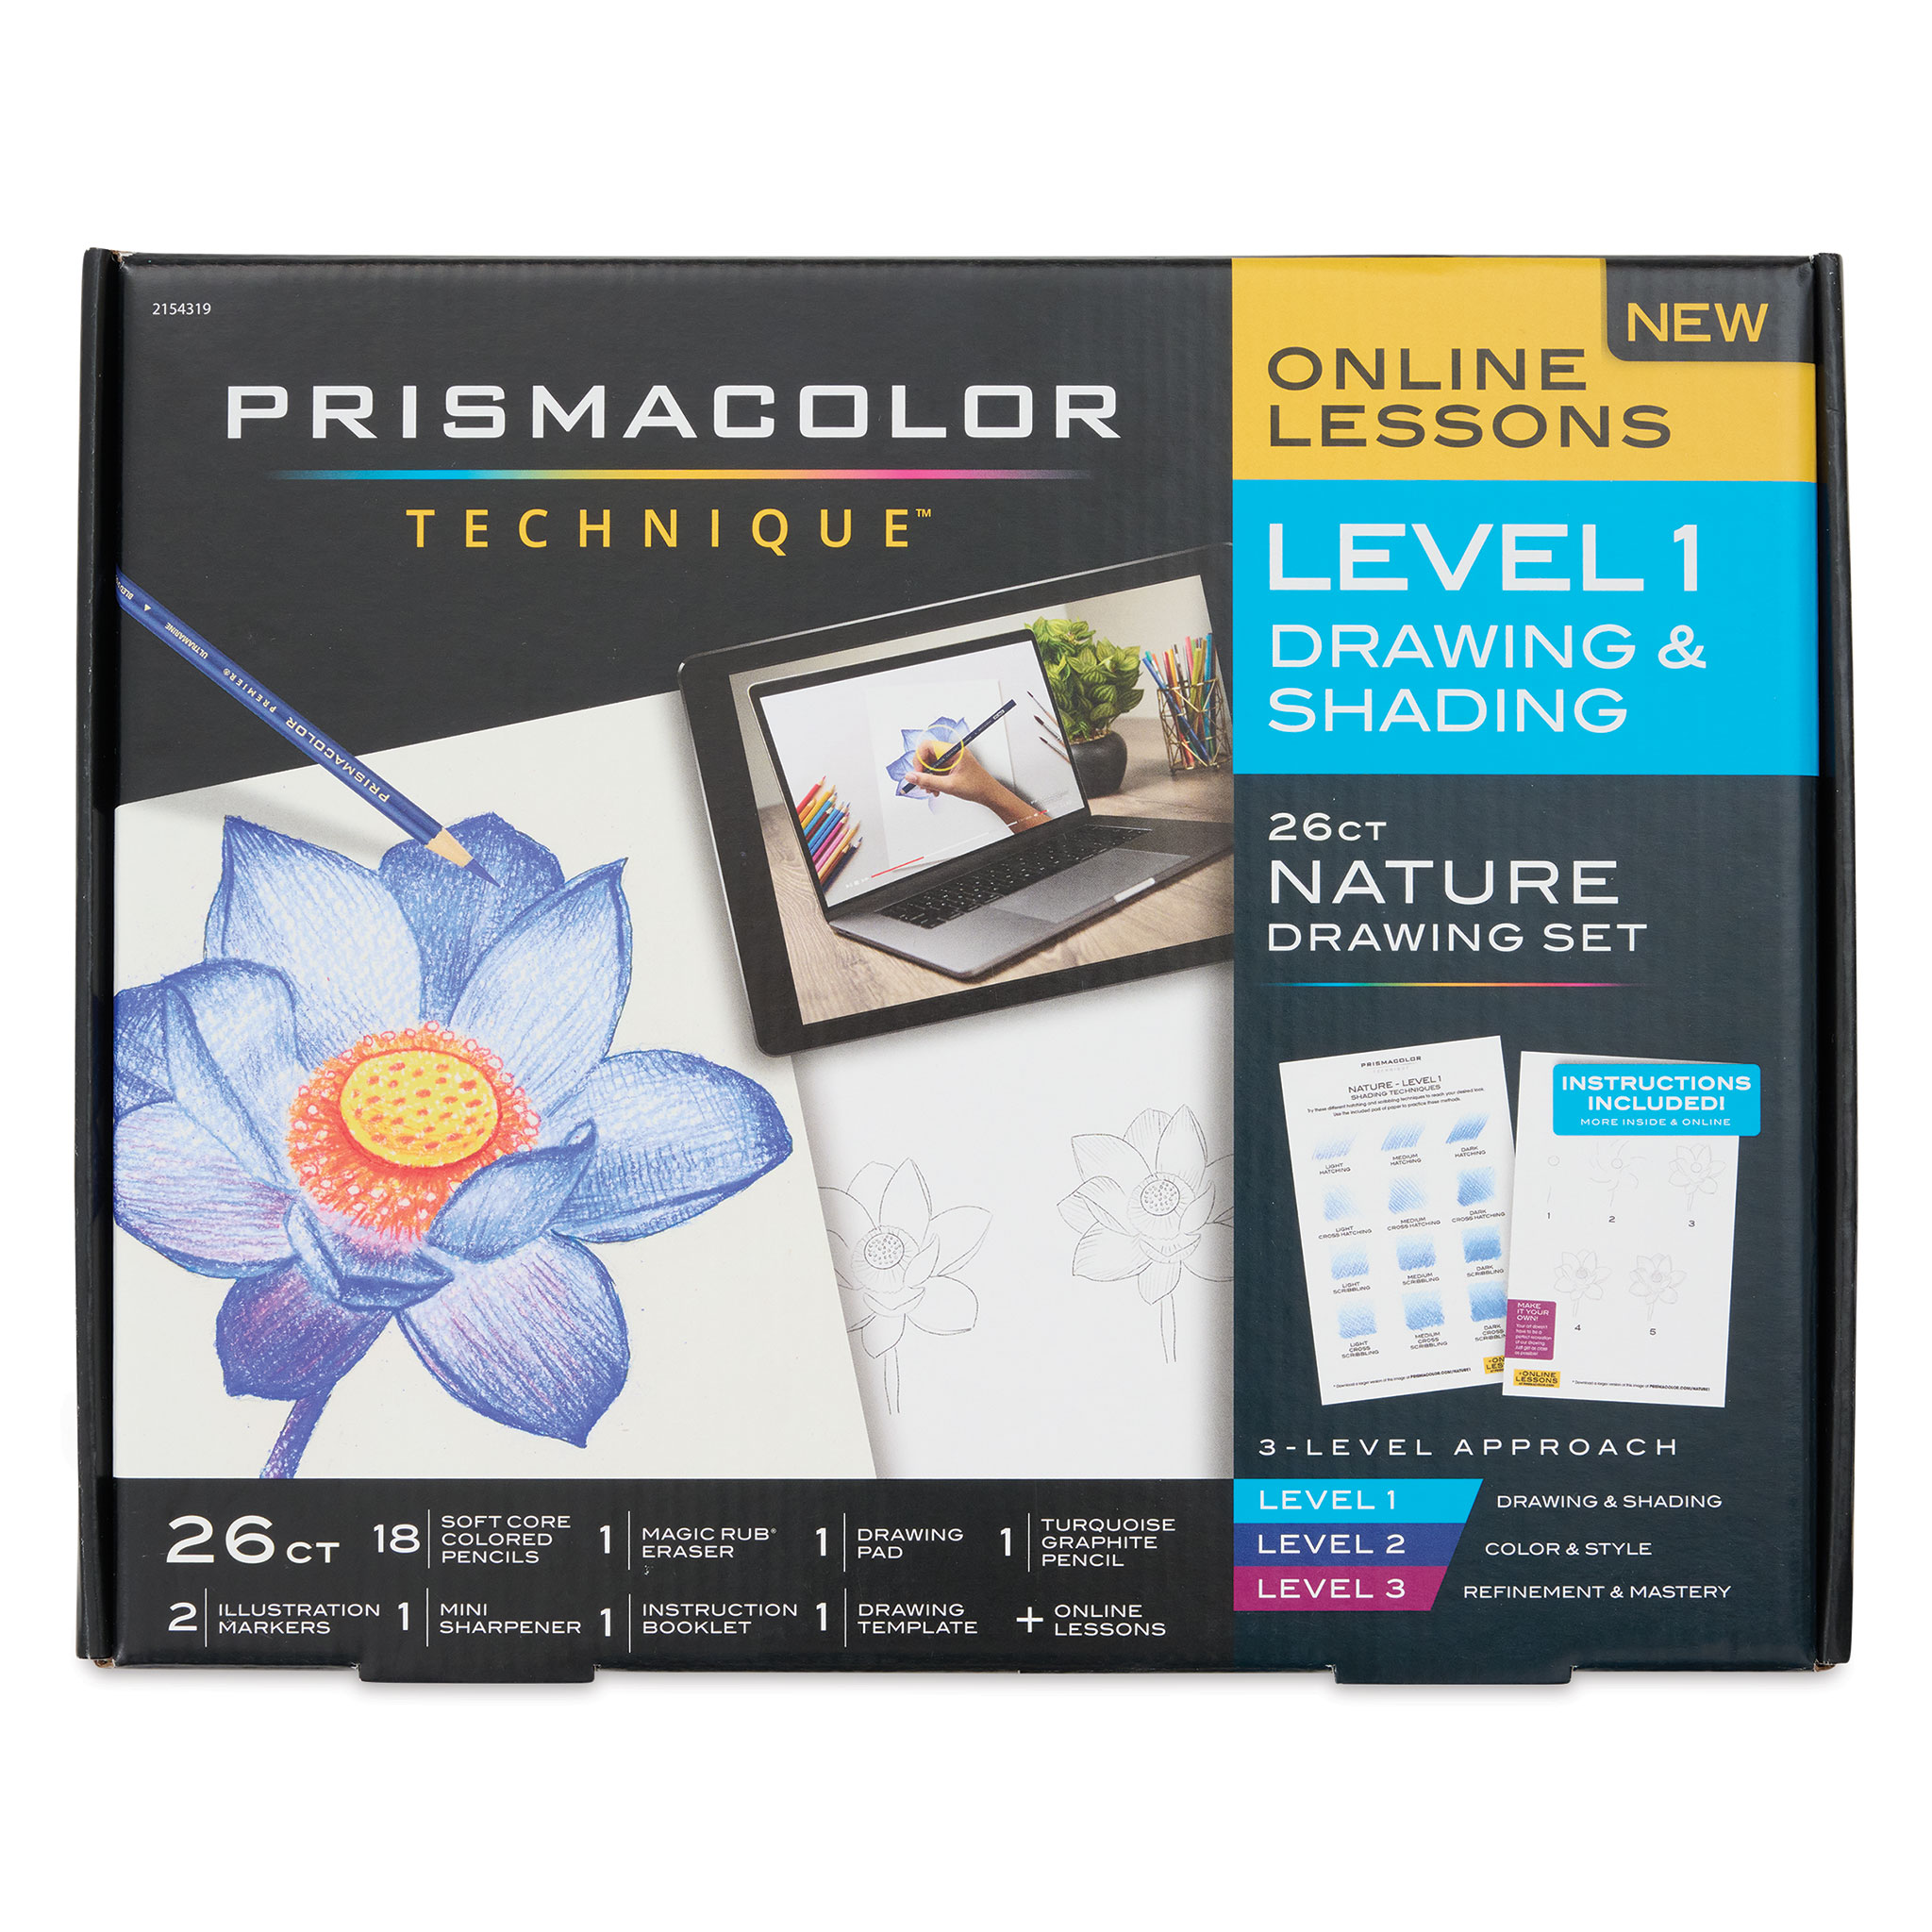 Prismacolor Eraser Multi-Pack